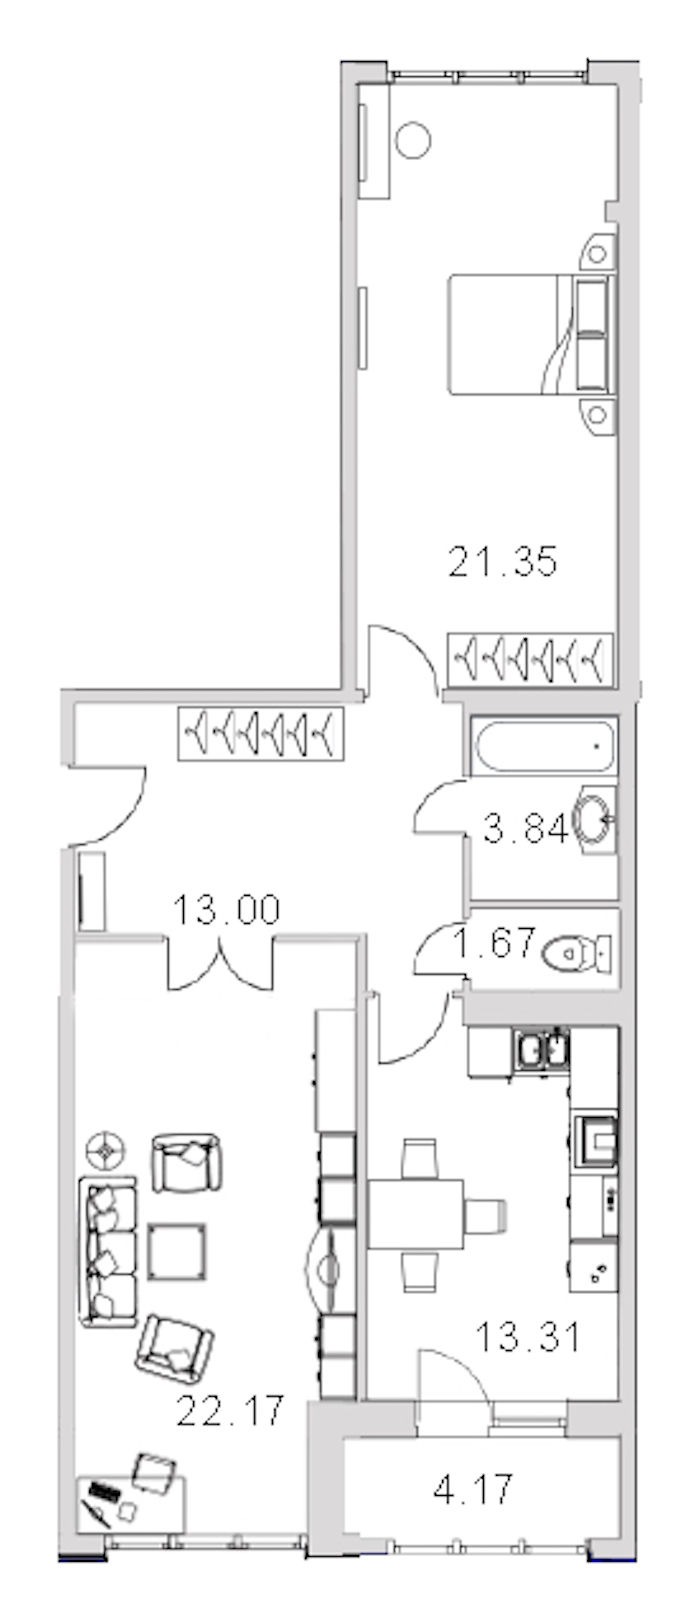 Двухкомнатная квартира в : площадь 79.6 м2 , этаж: 4 – купить в Санкт-Петербурге